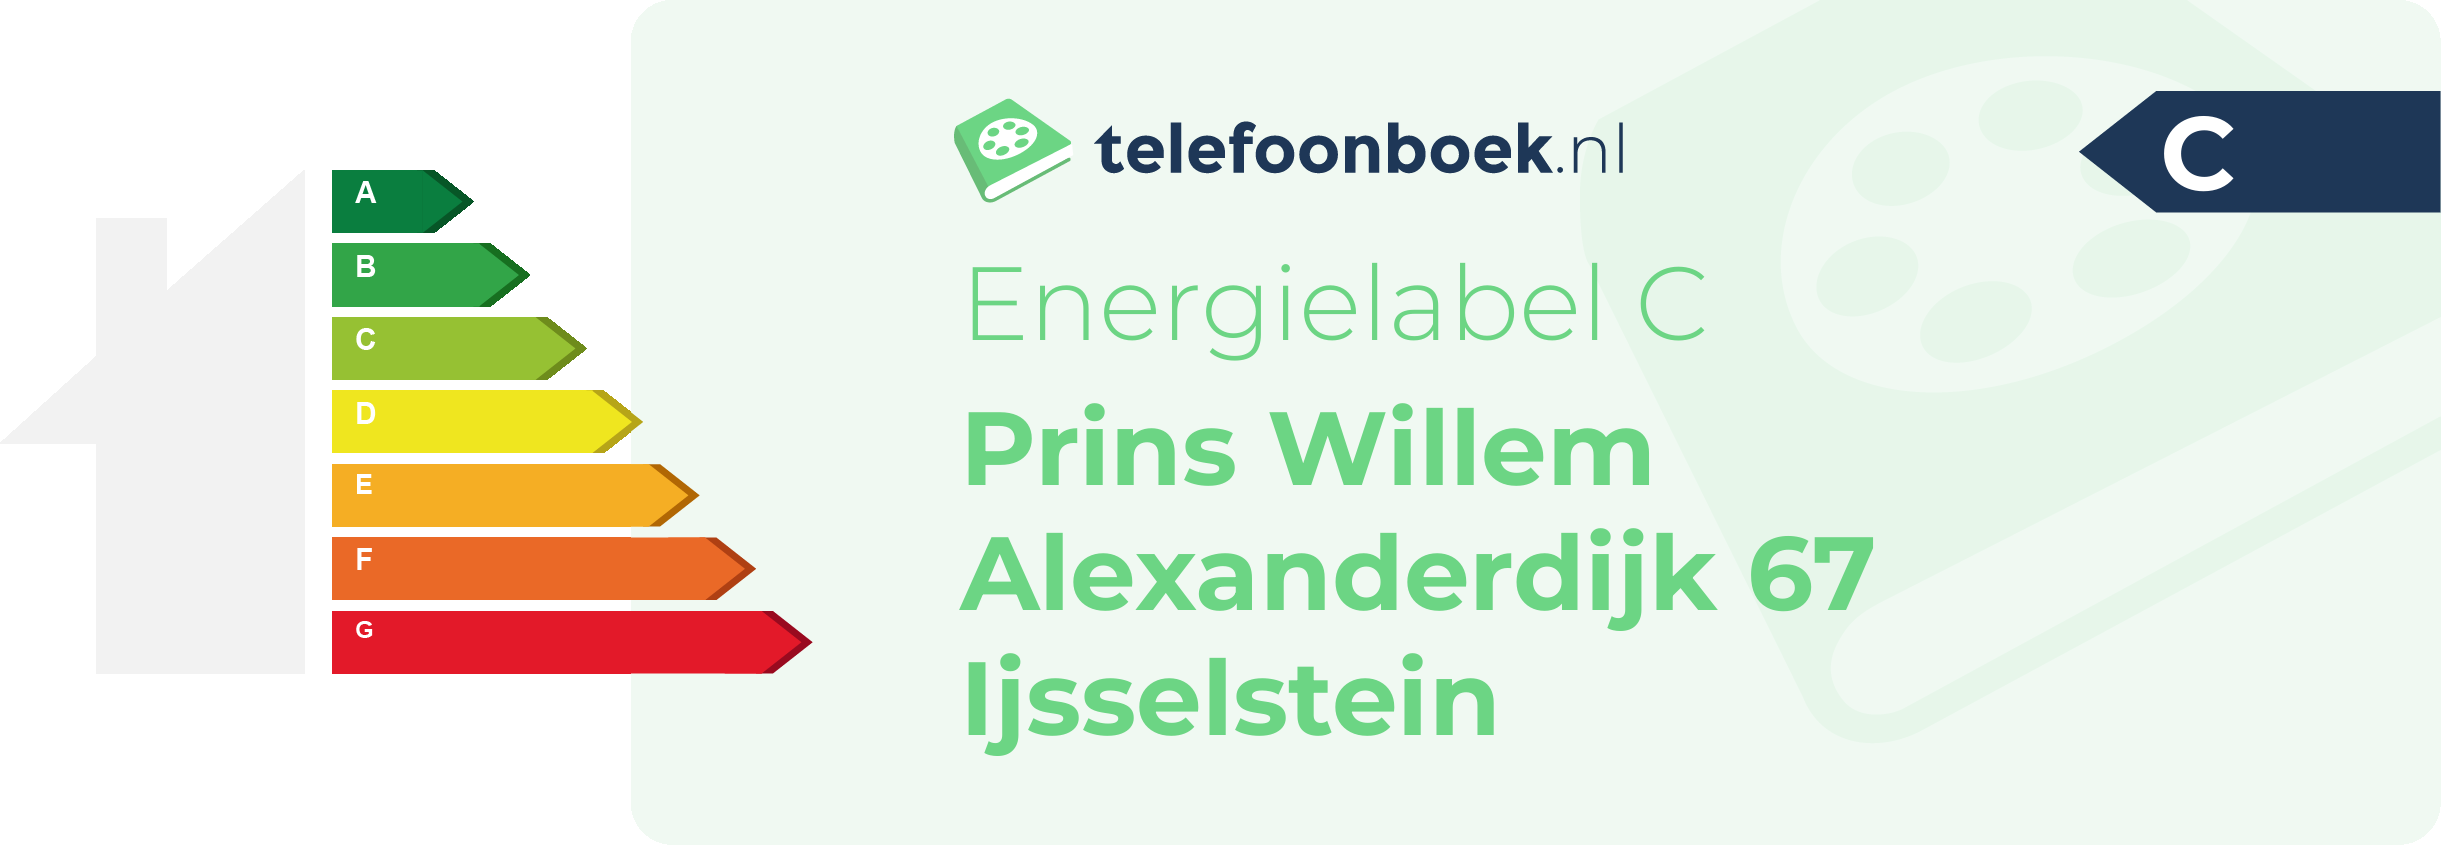 Energielabel Prins Willem Alexanderdijk 67 Ijsselstein